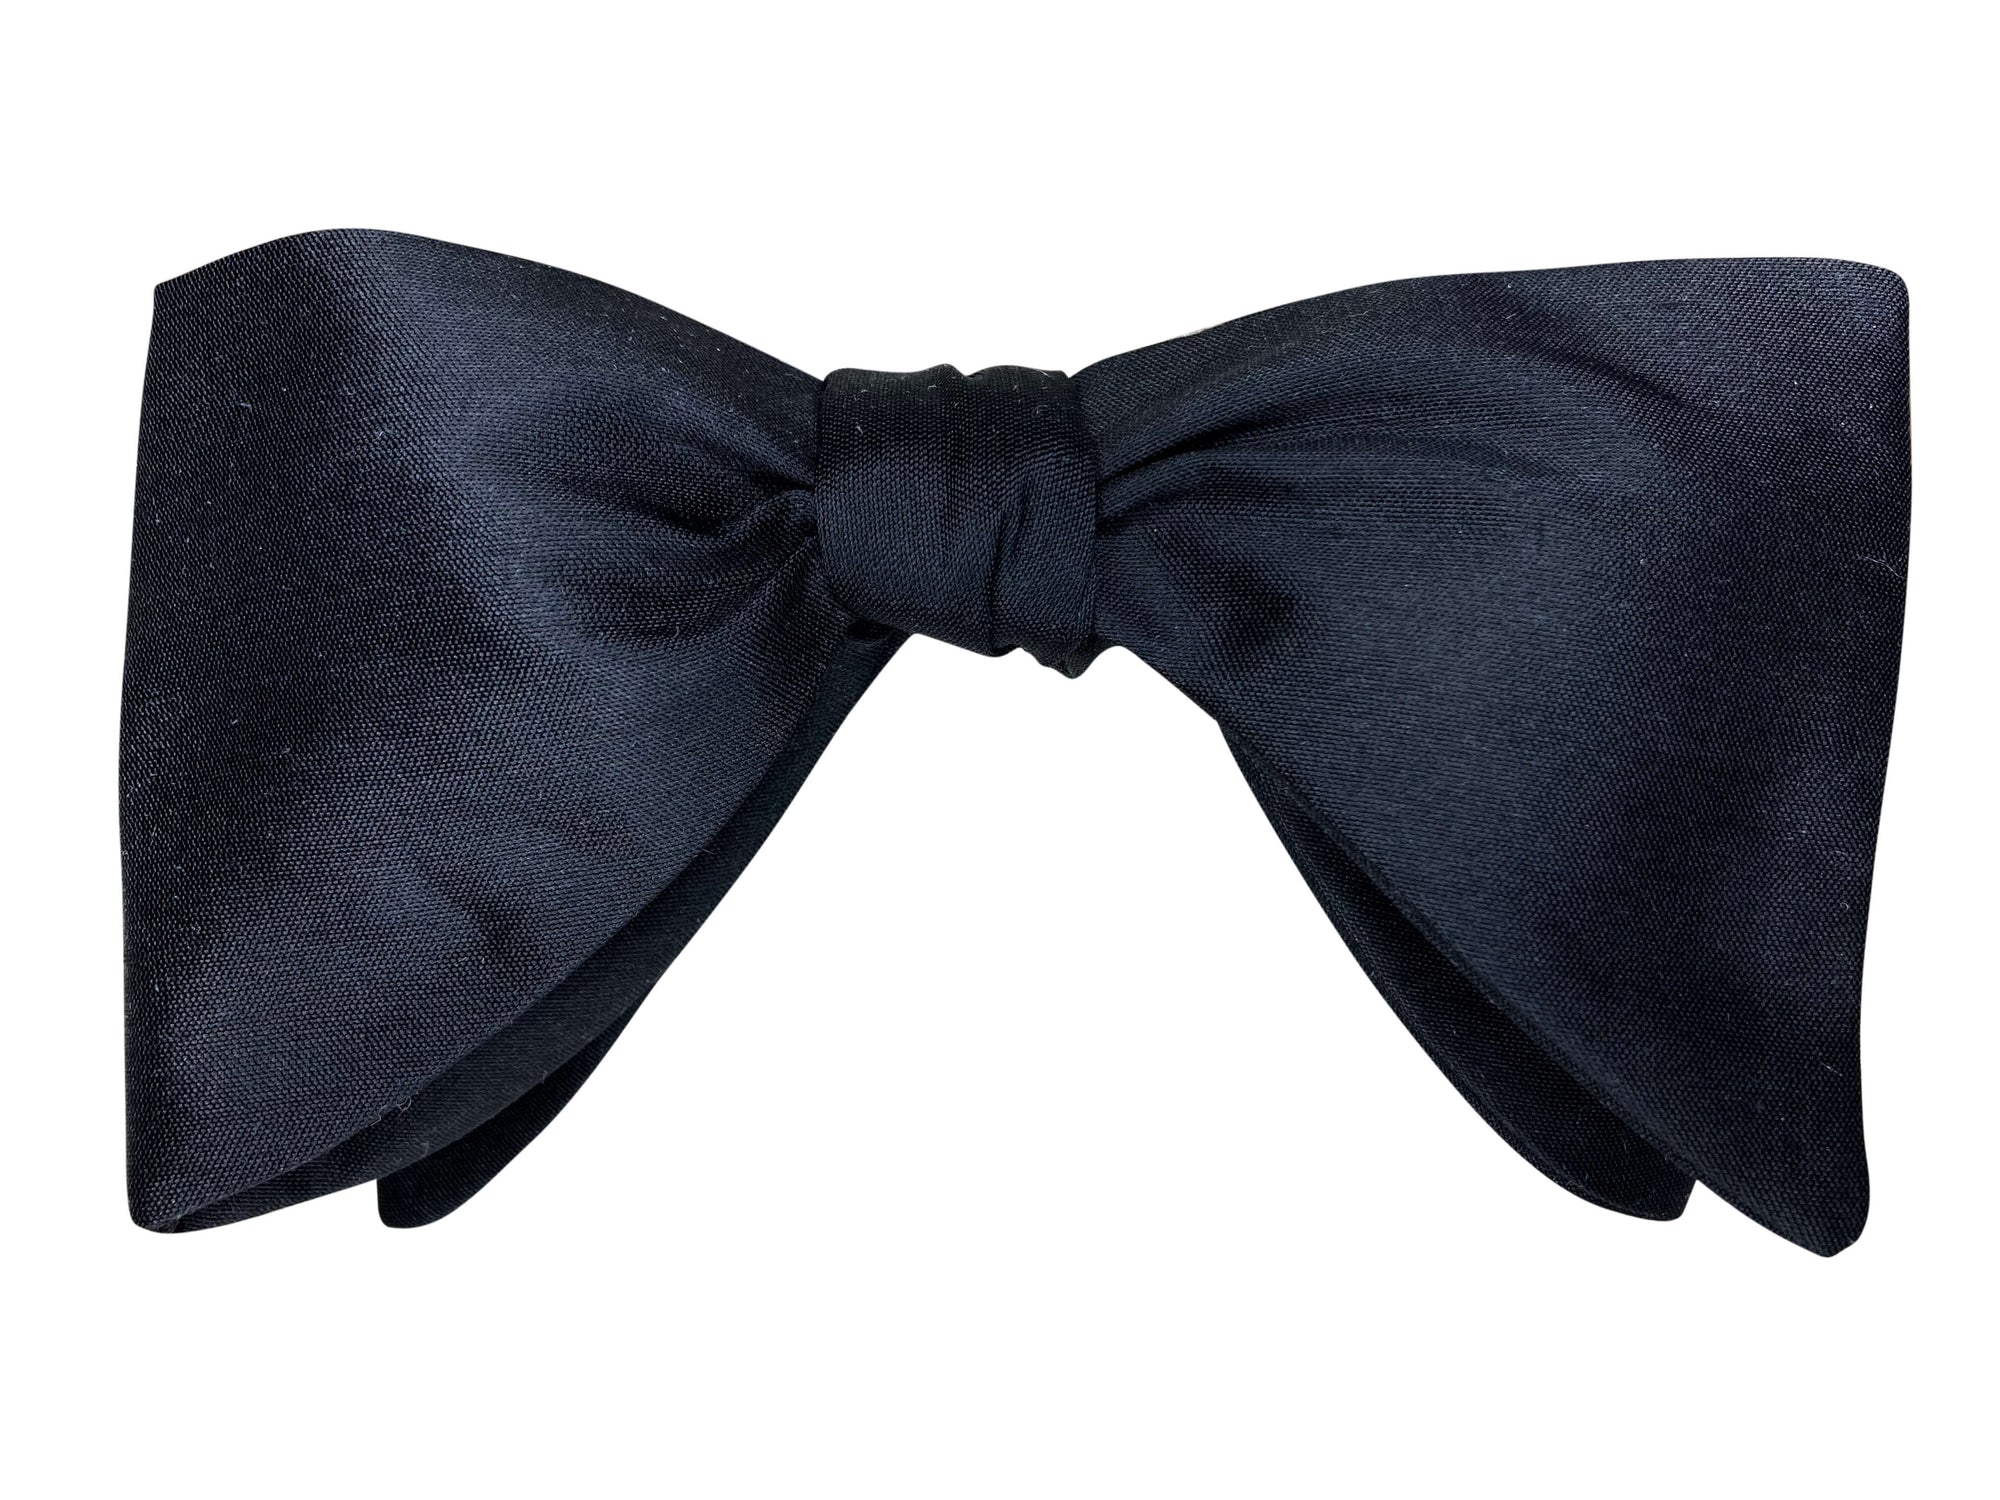 The Gentlemen oversized black silk self tie bow tie